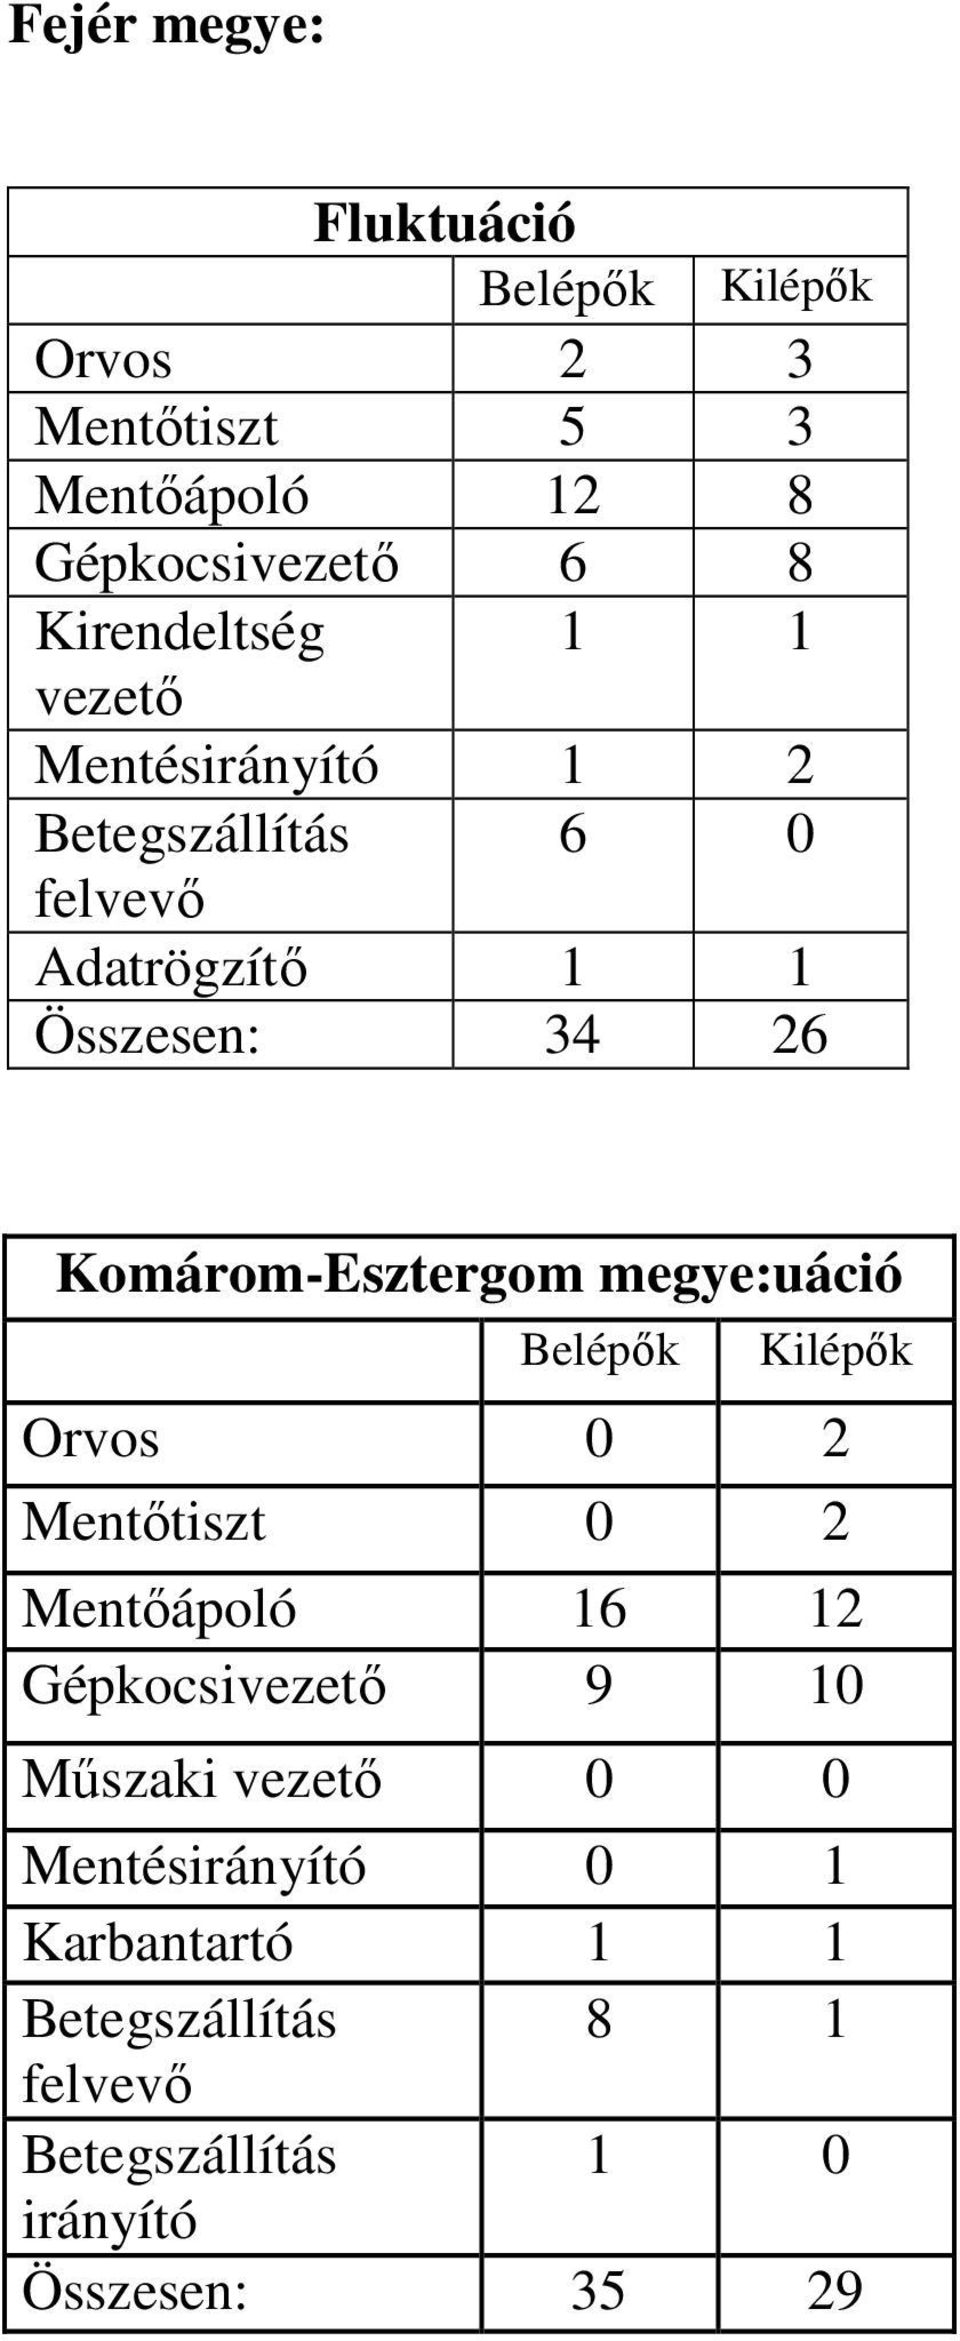 Komárom-Esztergom megye:uáció Belépők Kilépők Orvos 0 2 Mentőtiszt 0 2 Mentőápoló 16 12 Gépkocsivezető 9 10